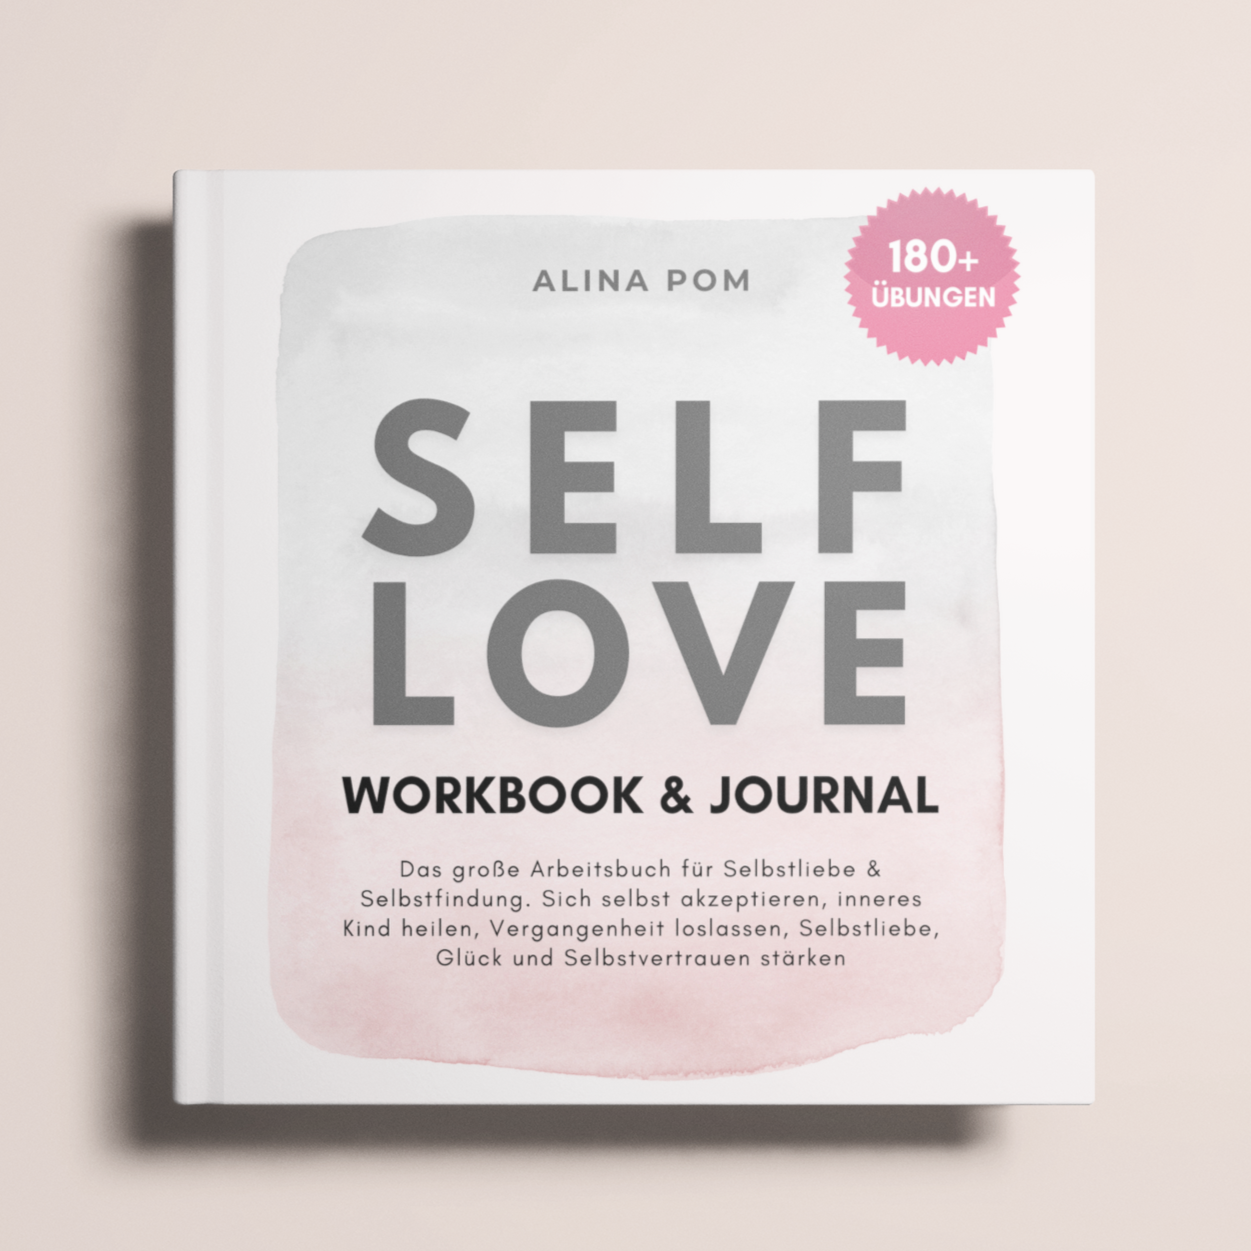 Selbstliebe Workbook zum Ausfüllen mit über 180 Übungen. Großes Arbeitsbuch für mehr Selbstakzeptanz und Selbstwertgefühl